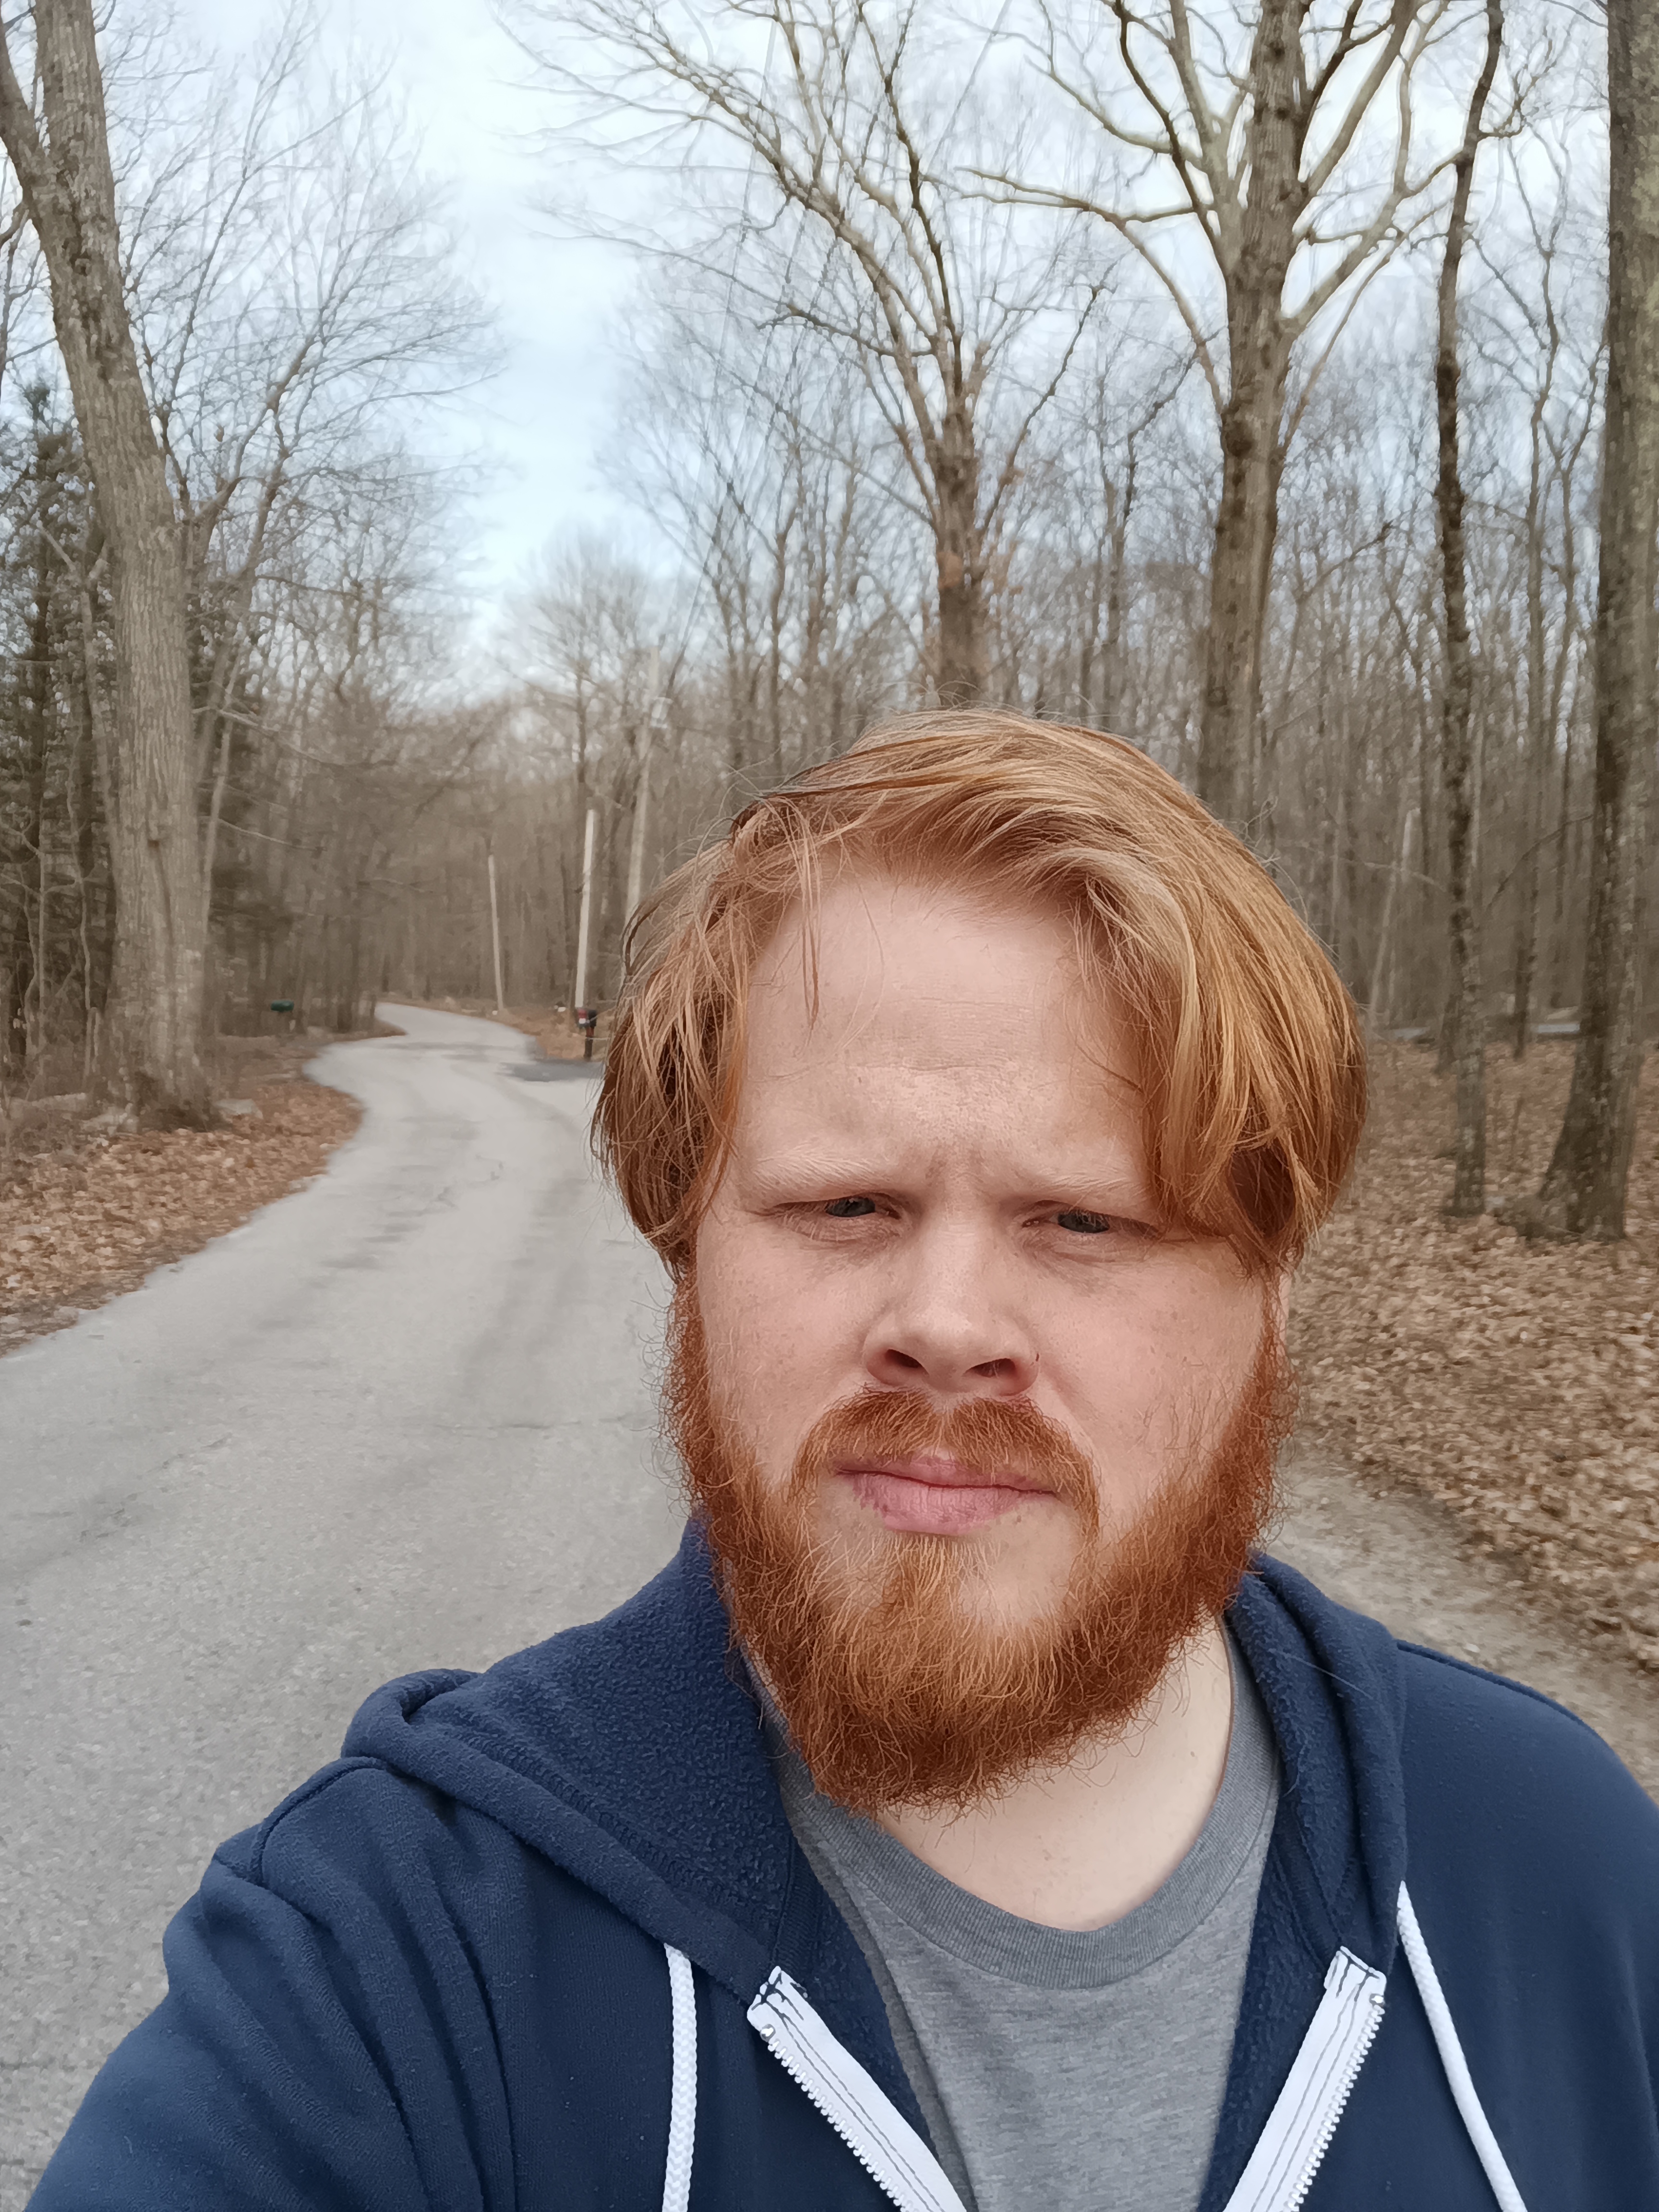 Selfie de um homem em uma estrada na floresta